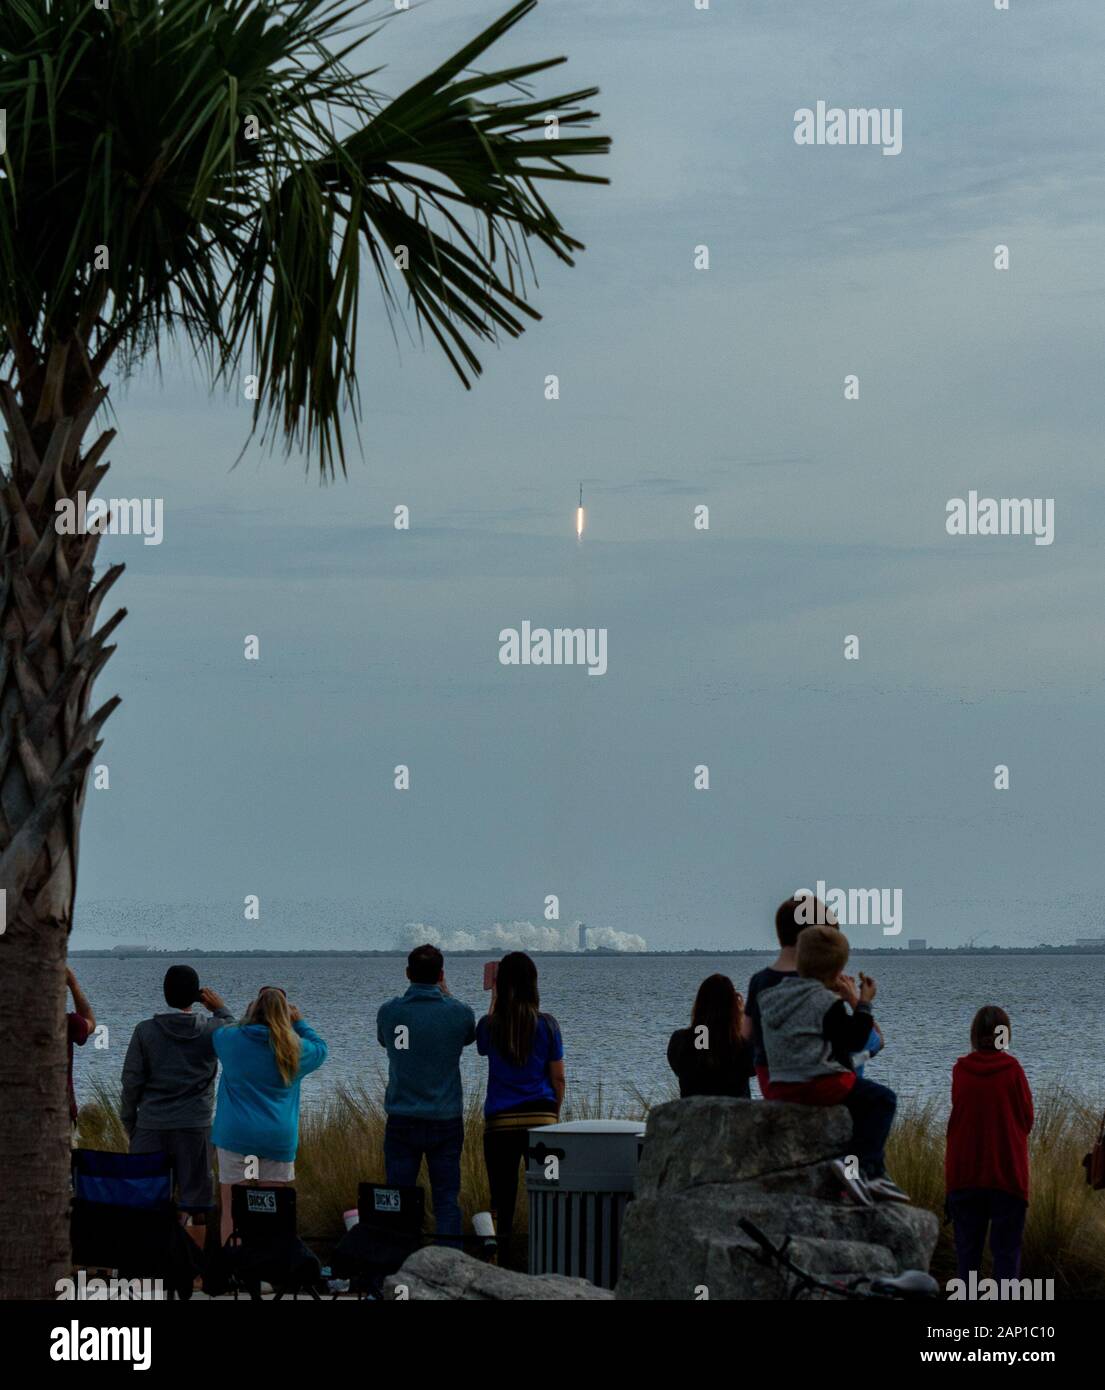 La gente mira desde Titusville, Florida como un cohete SpaceX Falcon 9 que lleva la cápsula del astronauta Crew Dragon para una prueba en Cabo Cañaveral. Foto de stock